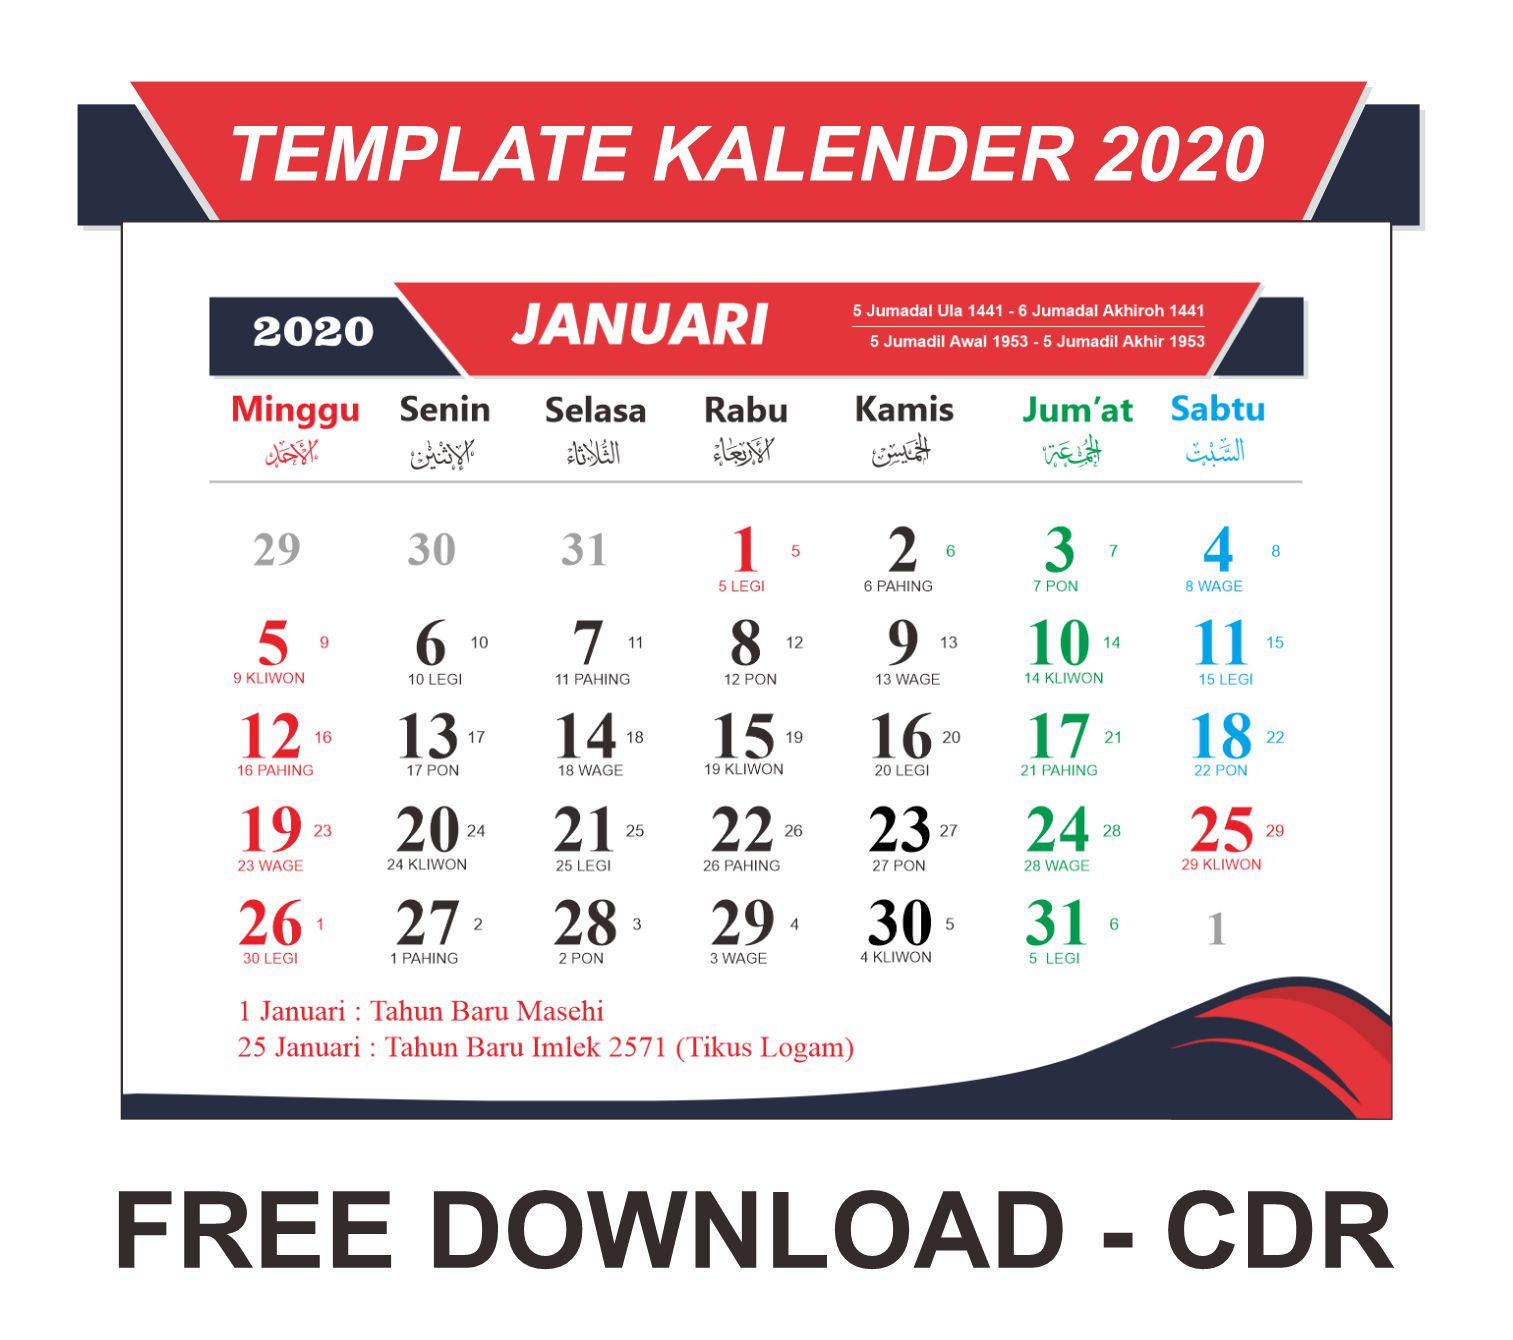 Download Template Kalender  2021  CRD Lengkap Dengan Jawa  